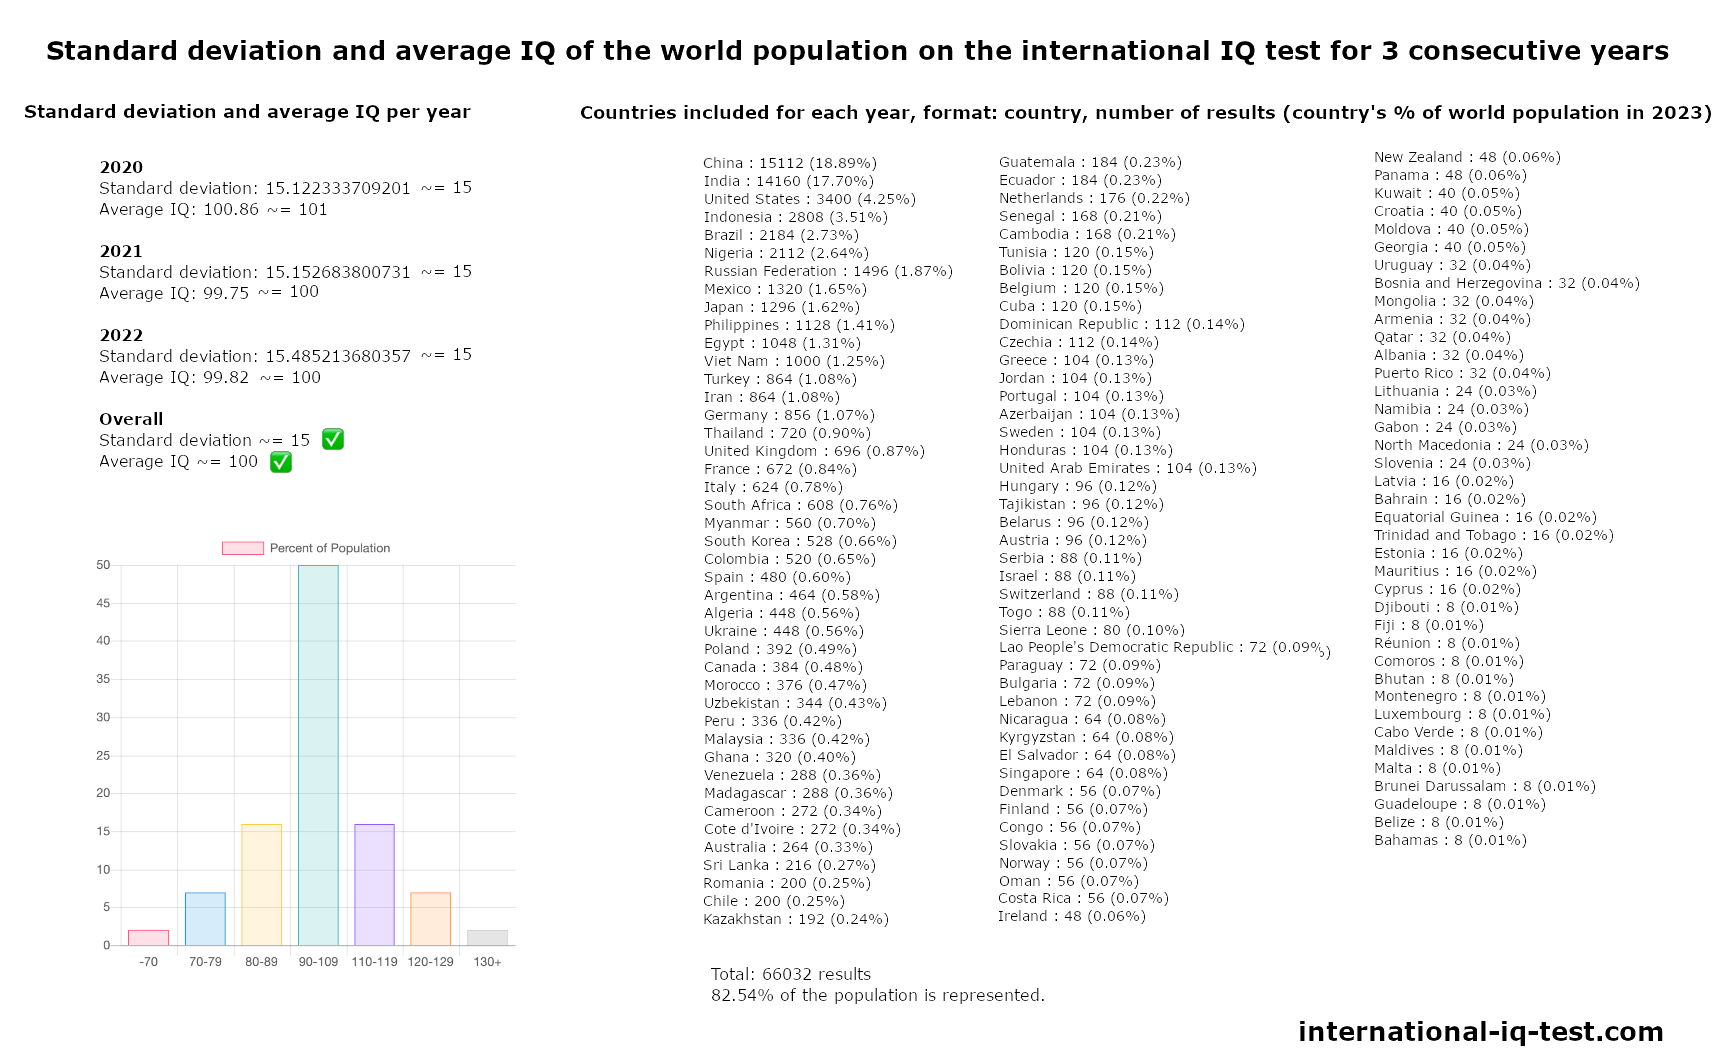 Standar deviasi dan IQ rata-rata populasi dunia pada tes IQ internasional tahun 2020, 2021, dan 2022